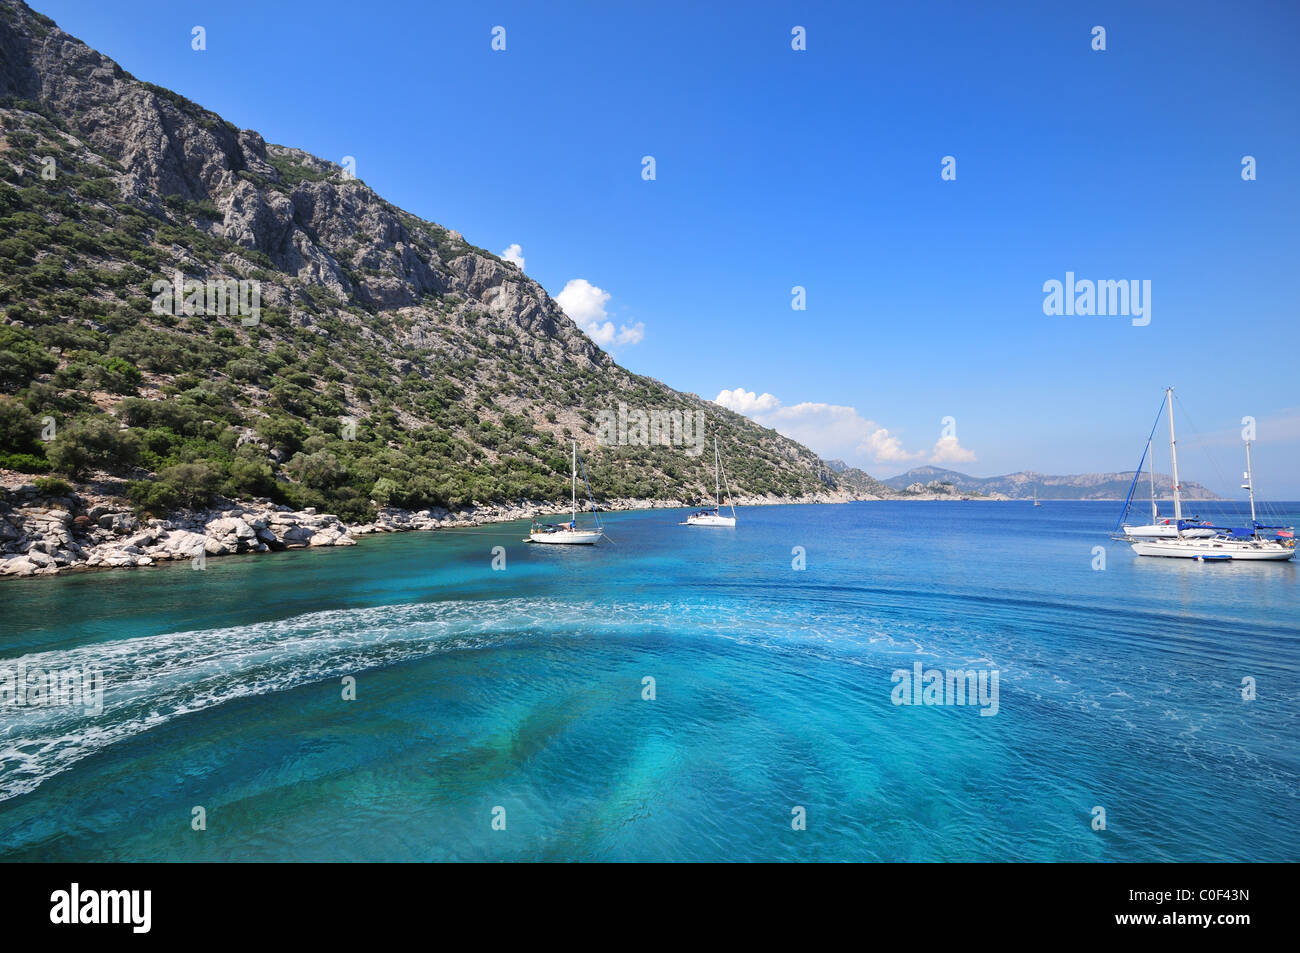 Une vue imprenable sur une magnifique baie avec une eau cristalline turquoise dans le sud de la Turquie, sur la mer Egée, la Turquie, l'Europe du Sud Banque D'Images